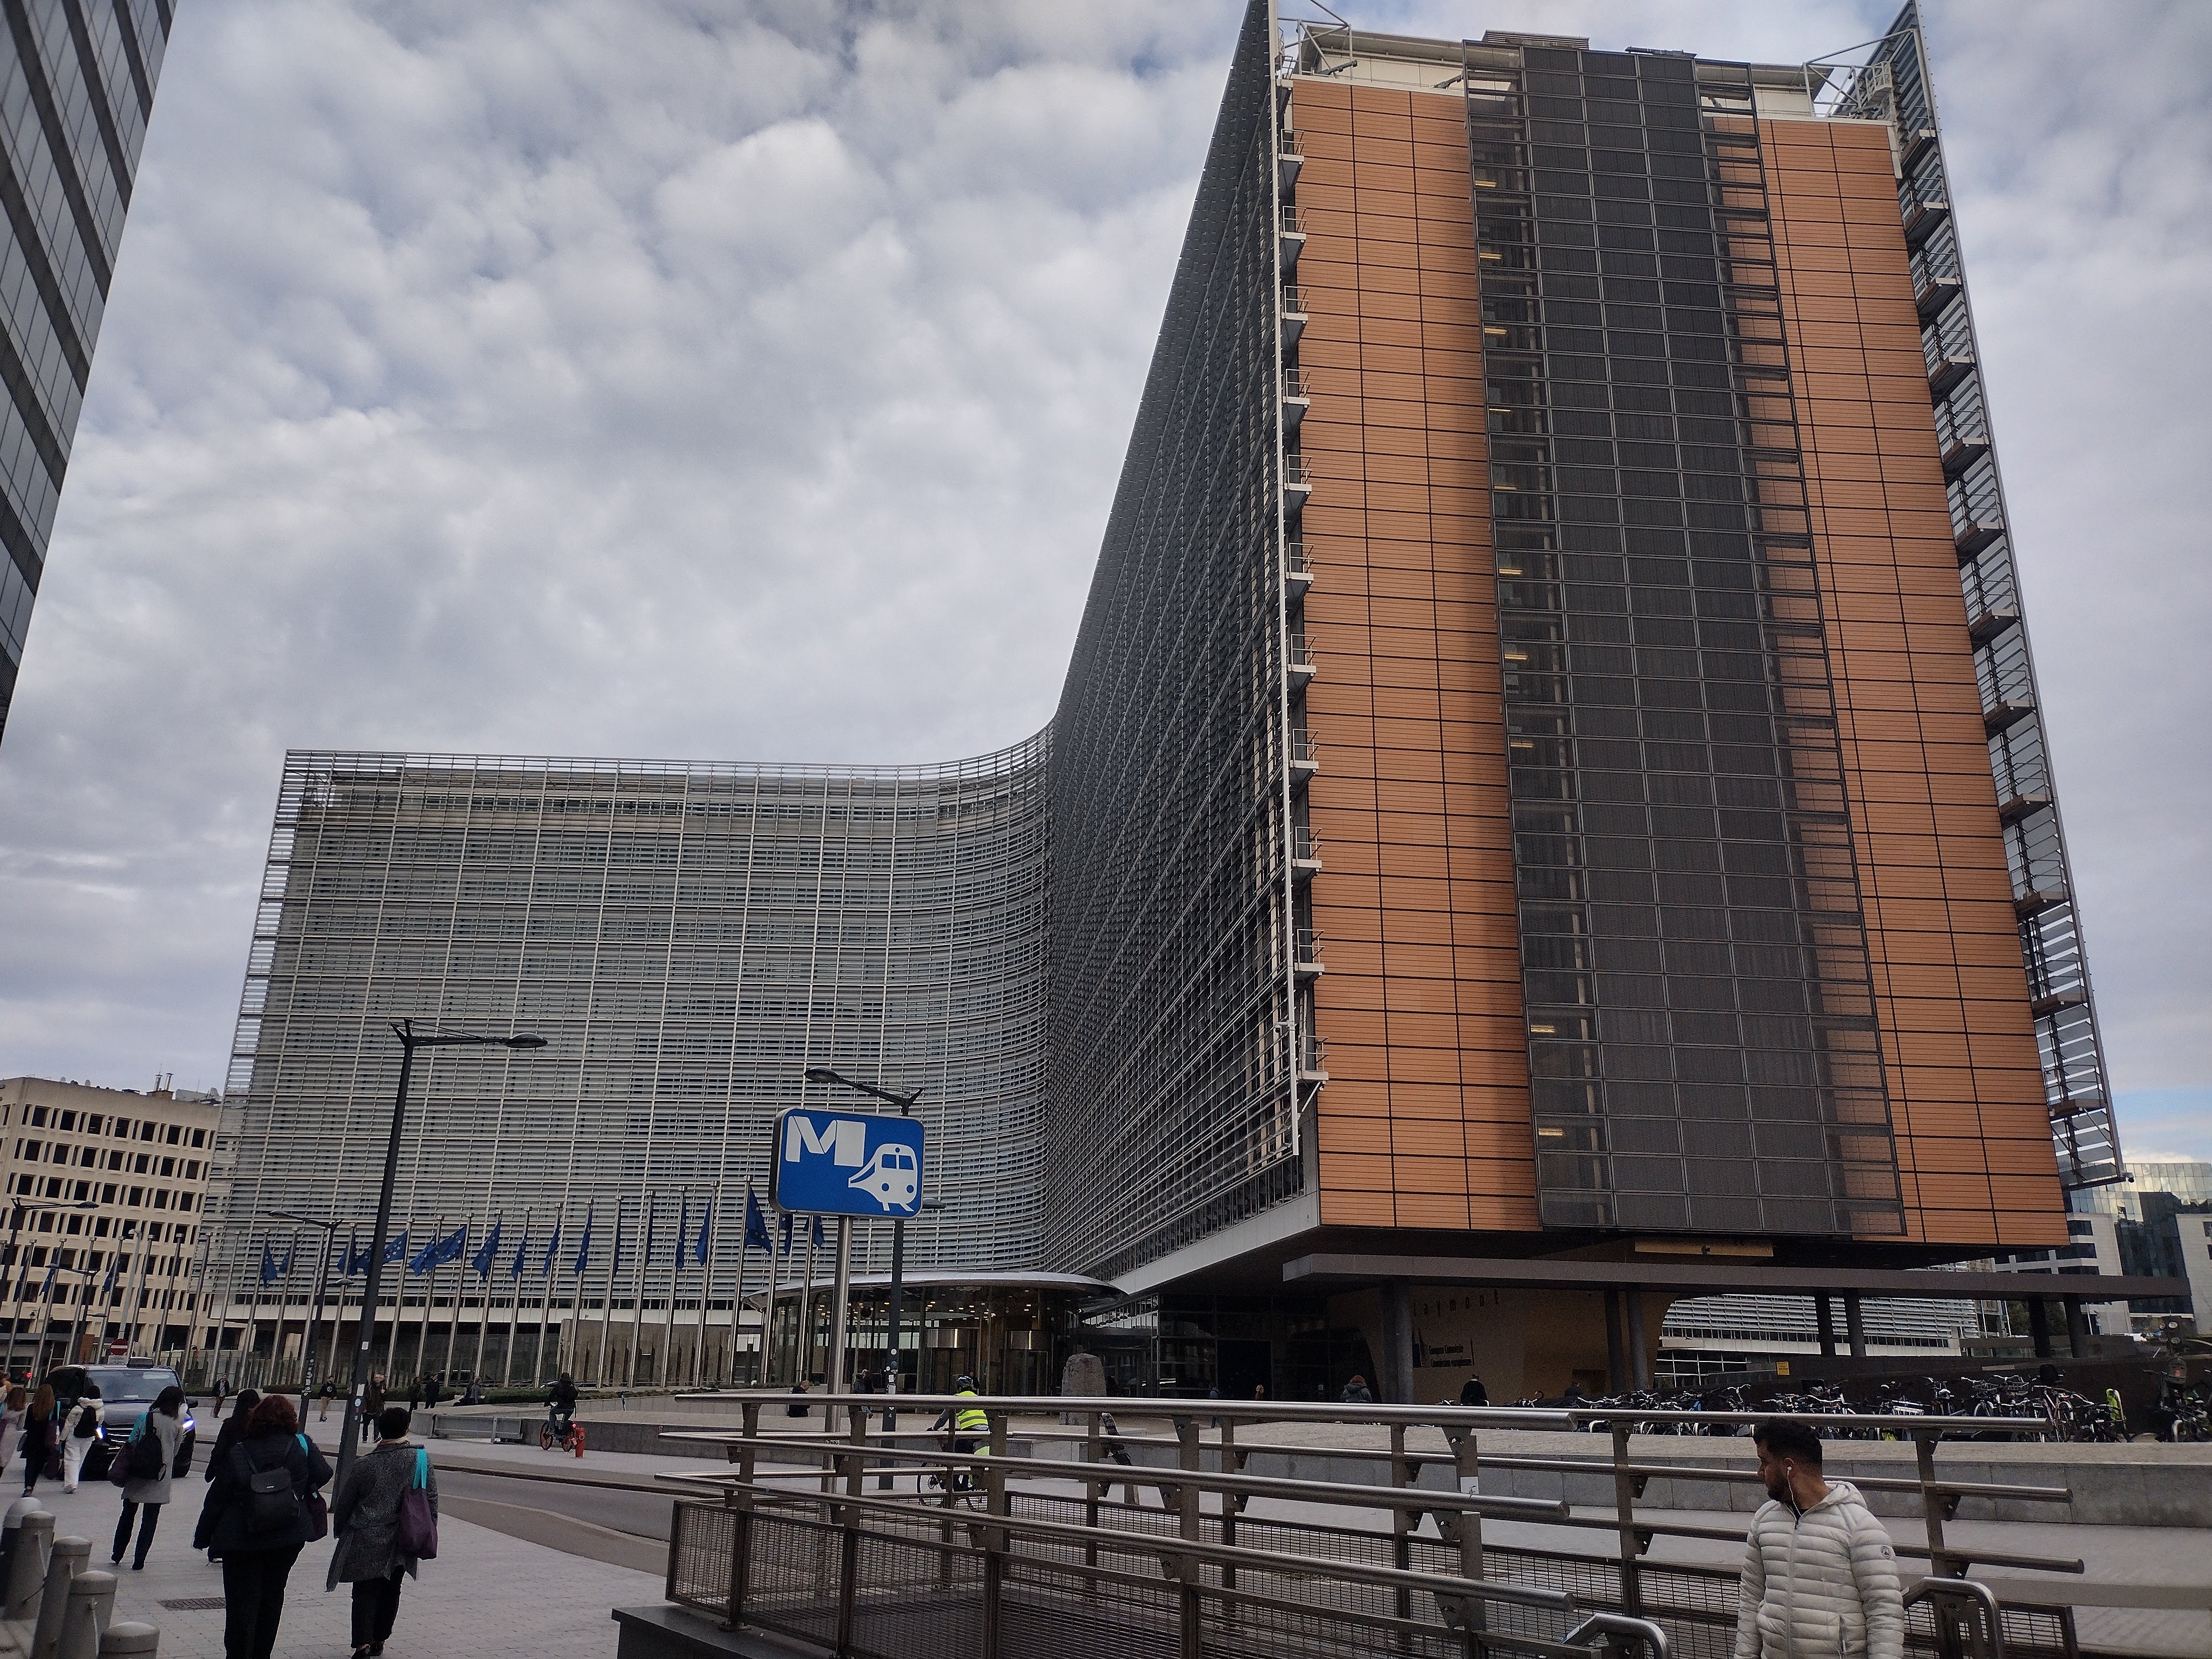 Европейската комисия съобщи днес за седем наказателни процедури срещу България.